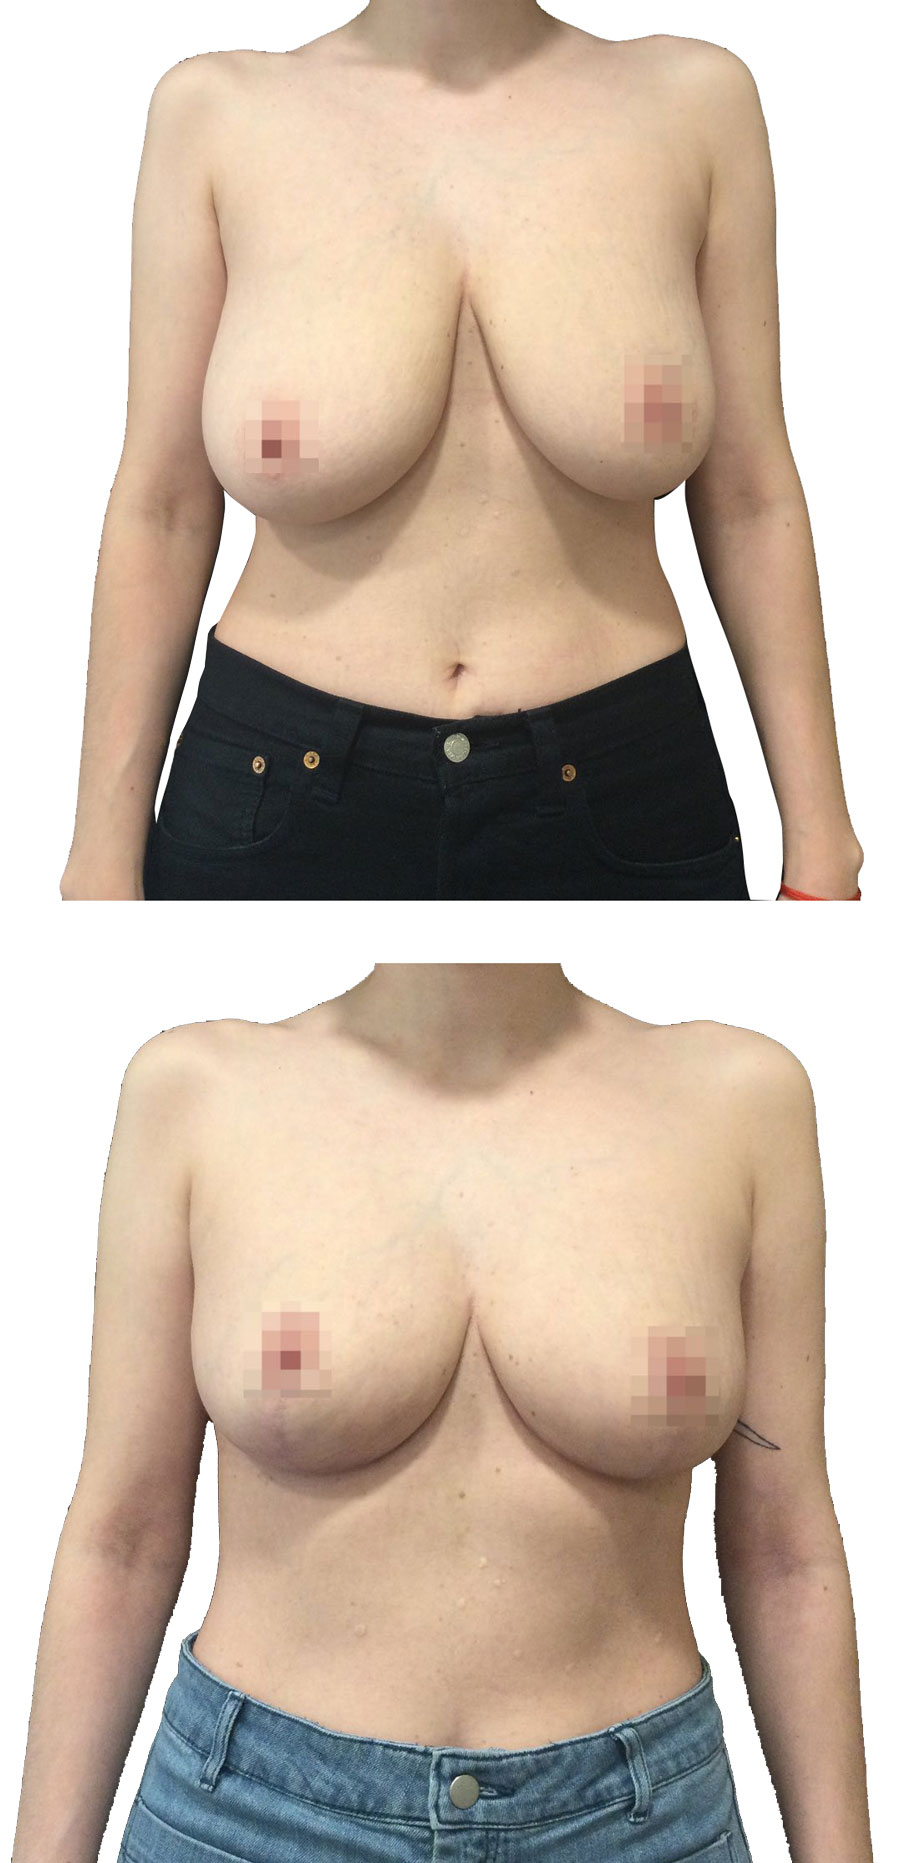 Reducción mamaria antes y después en paciente del Doctor Franco Góngora en la ciudad de Madrid